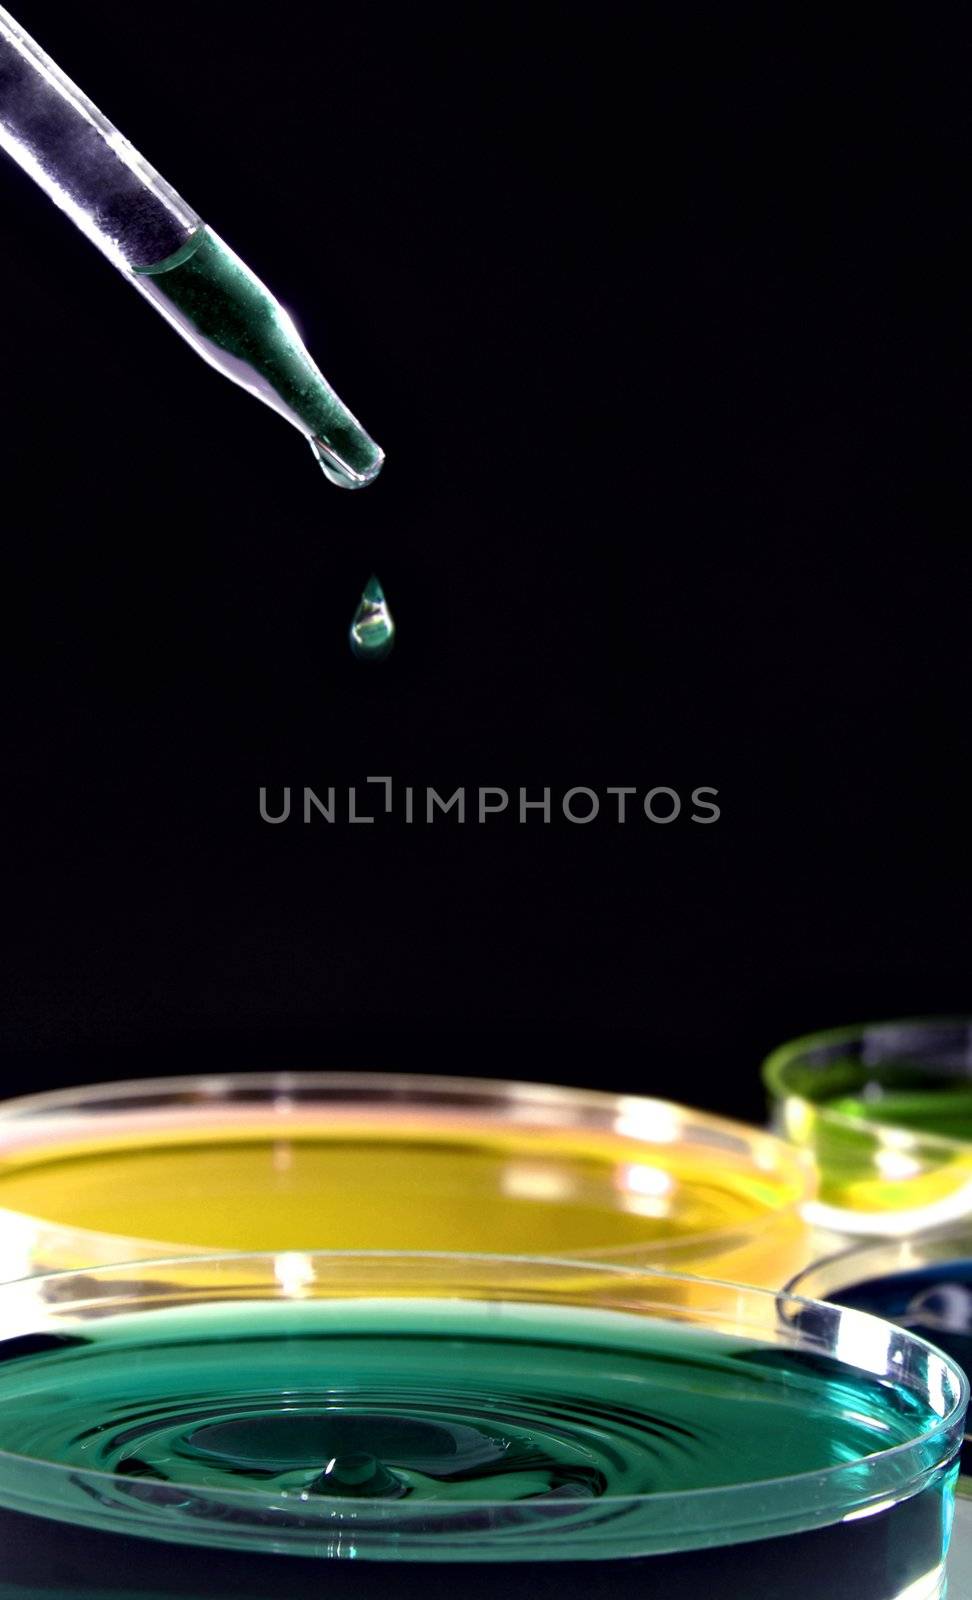 Laboratory pipette by ozaiachin